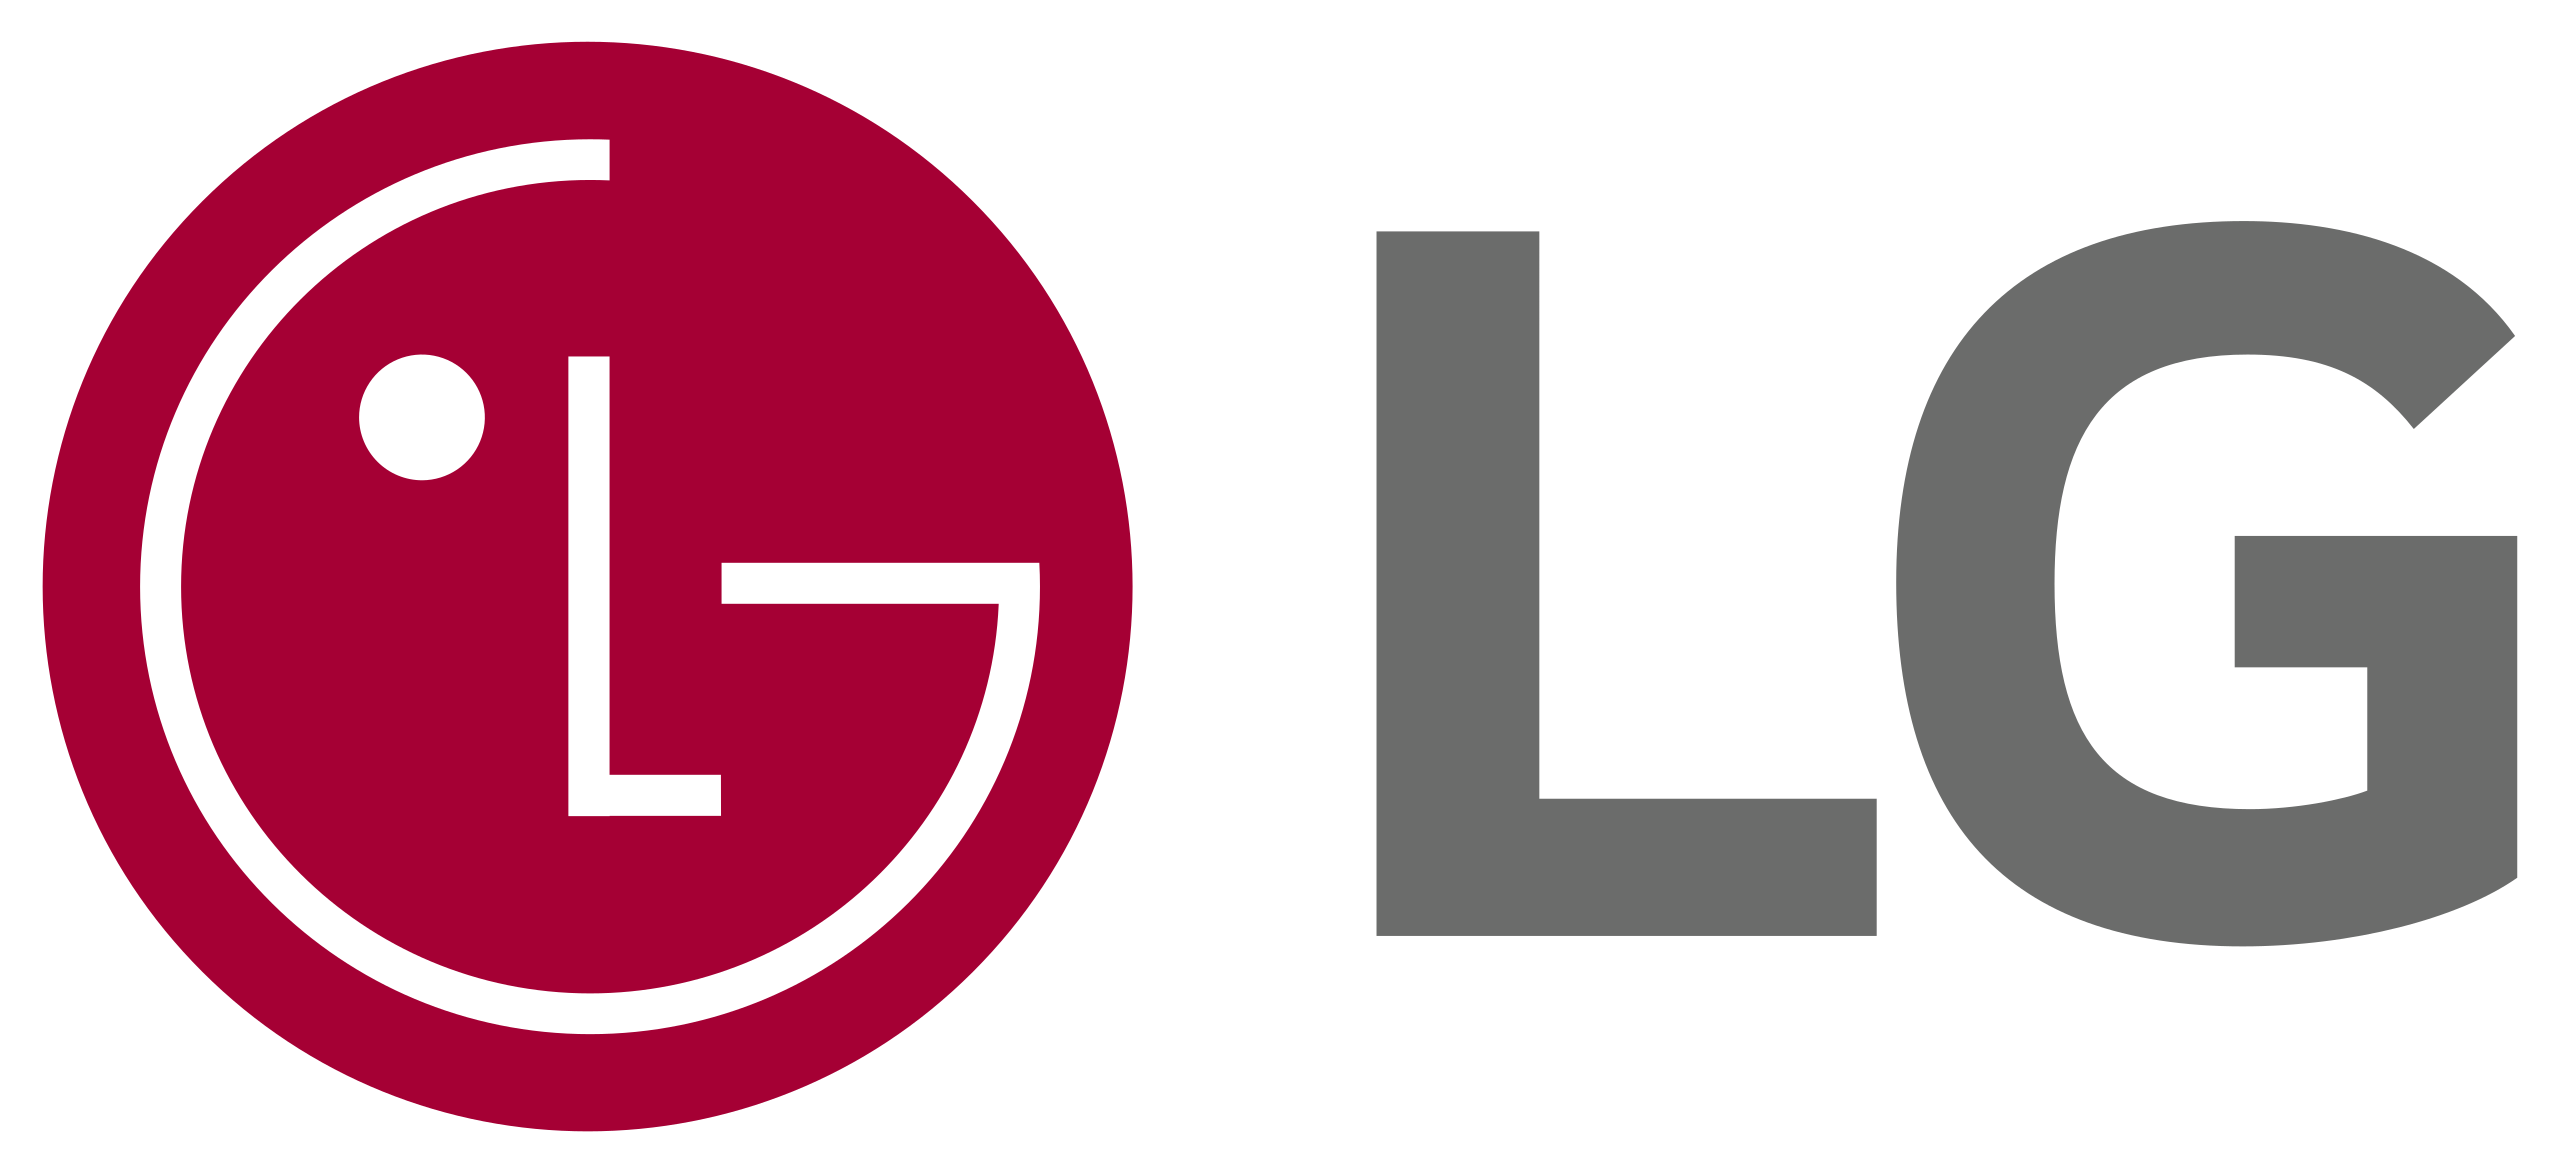 LG_logo_(2015).svg (1)